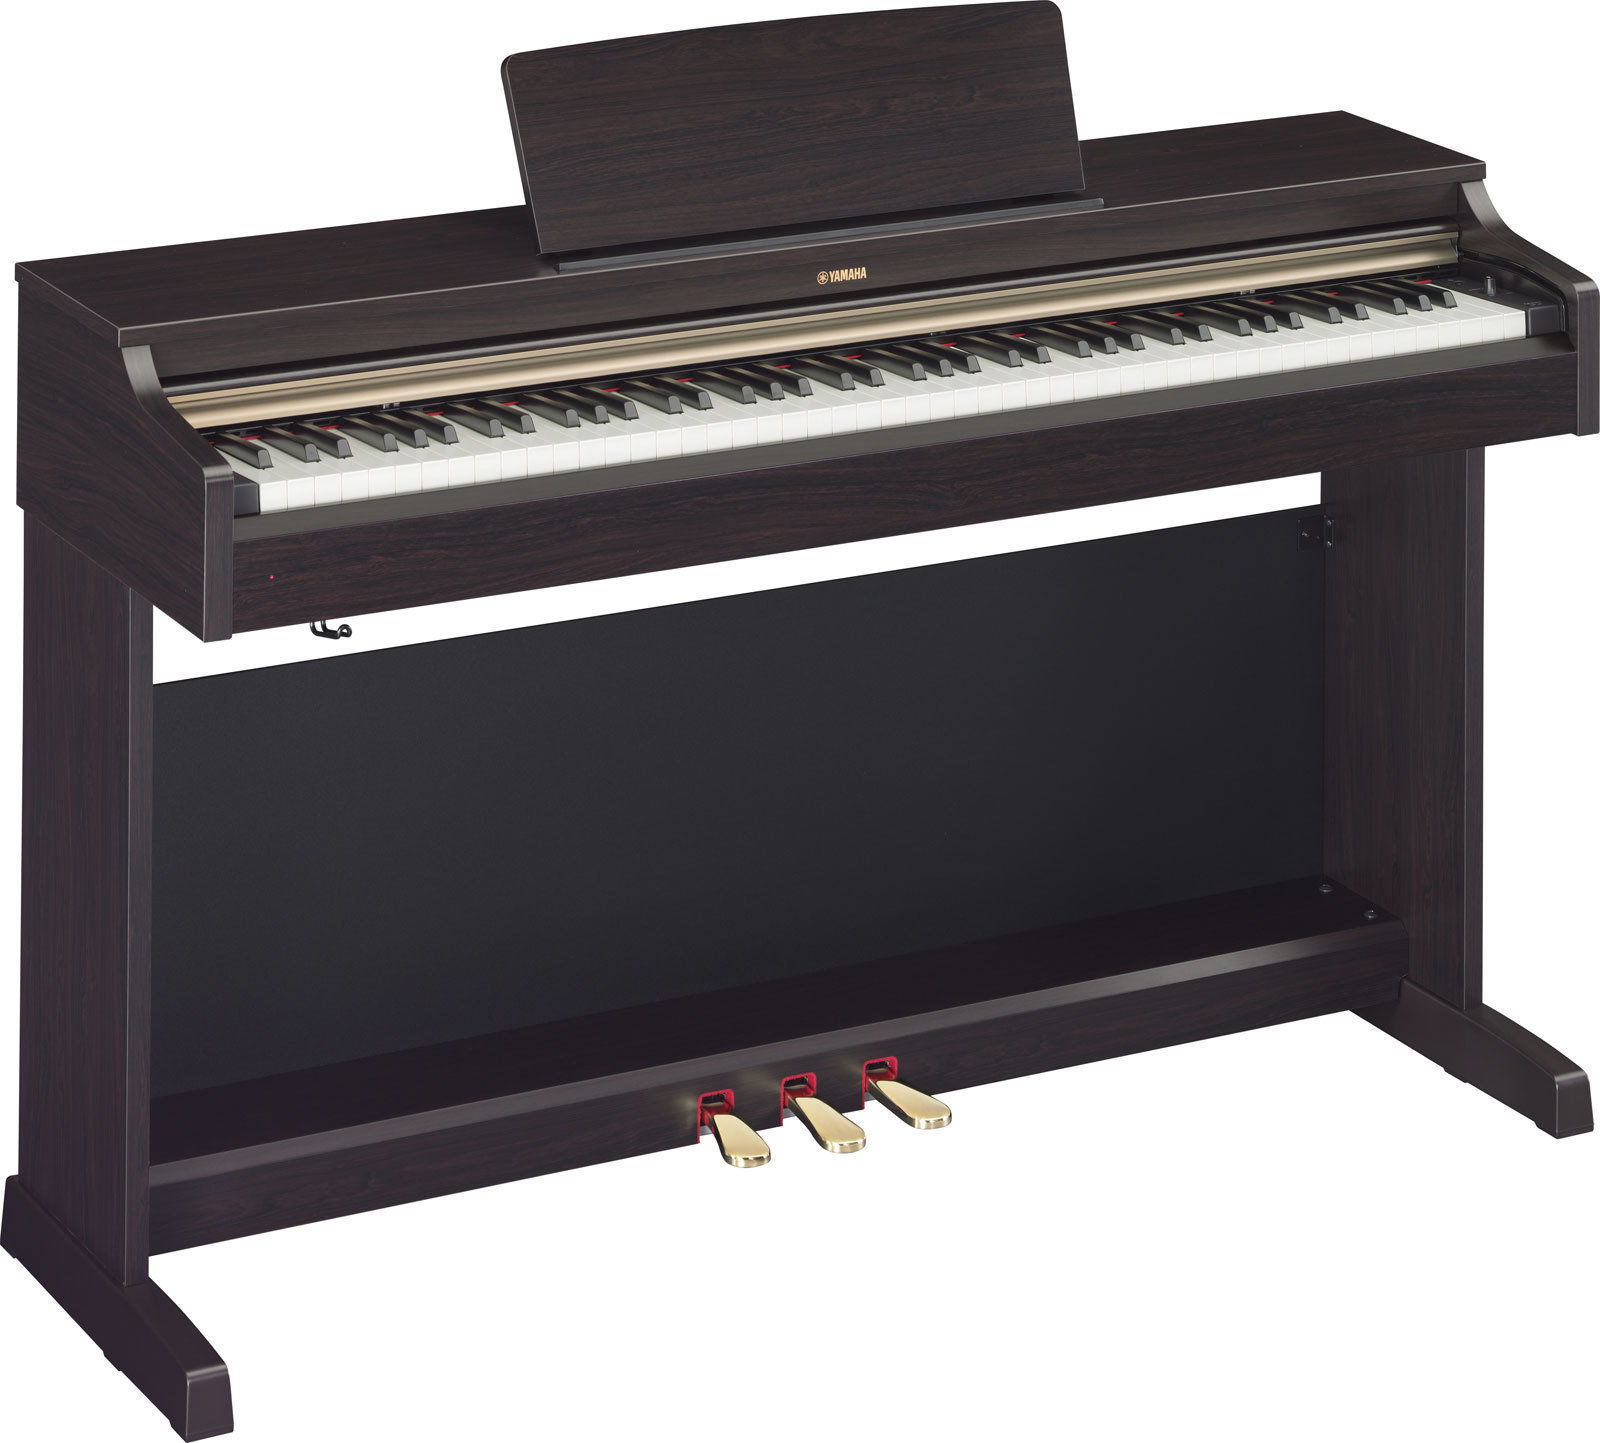 Digitalni pianino Yamaha YDP 162 R Arius